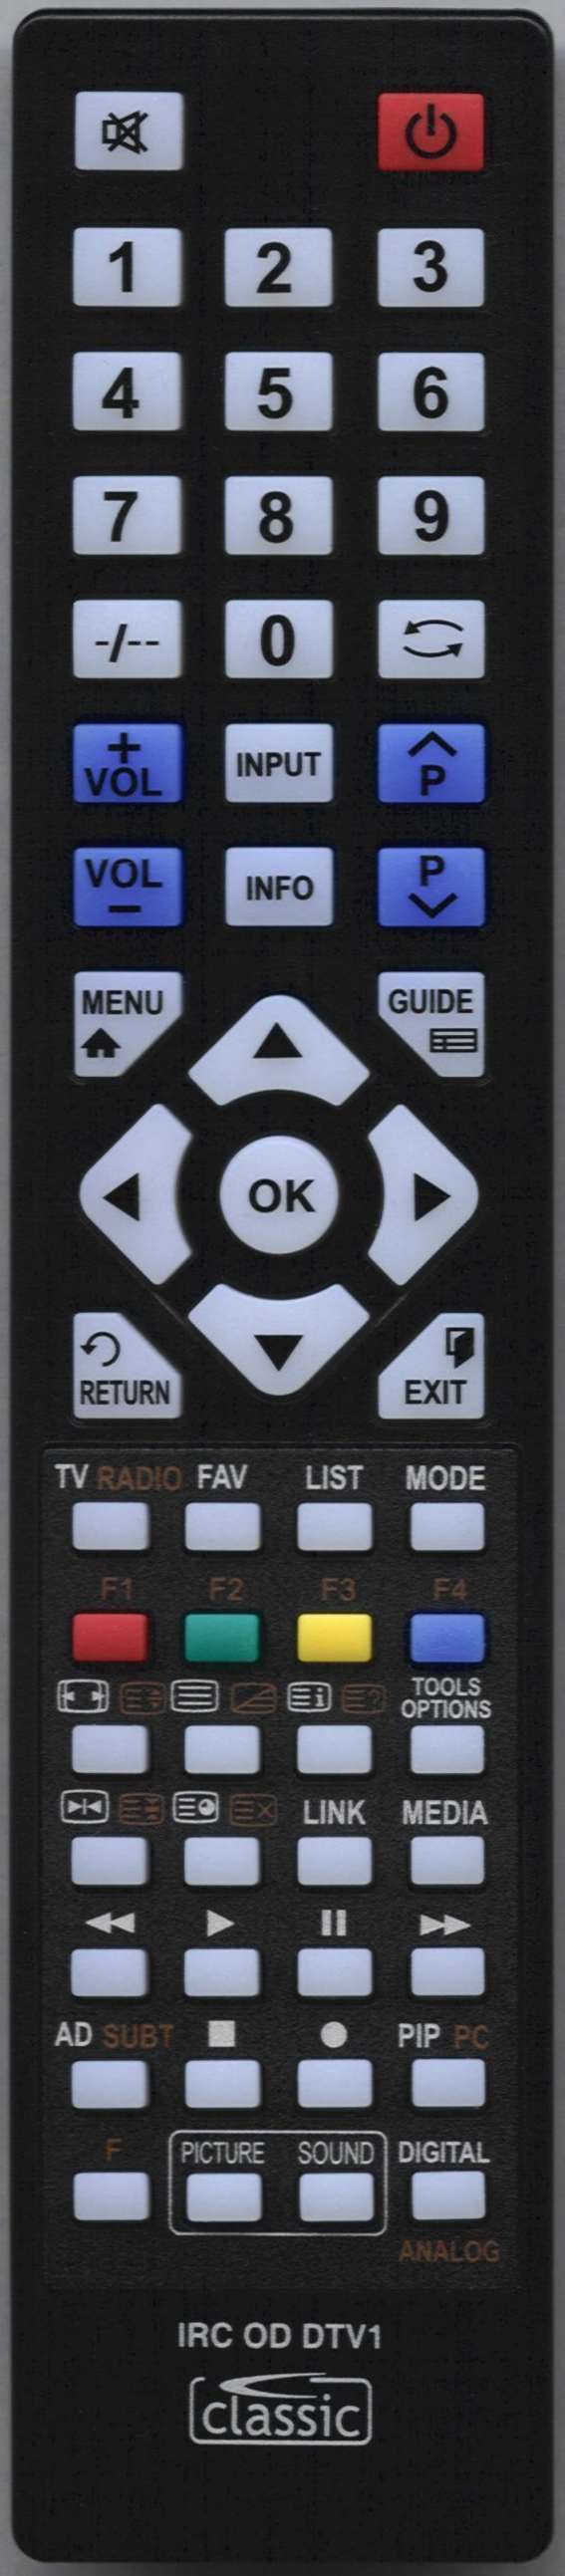 Samsung UE49K5510AKXXU Remote Control Alternative